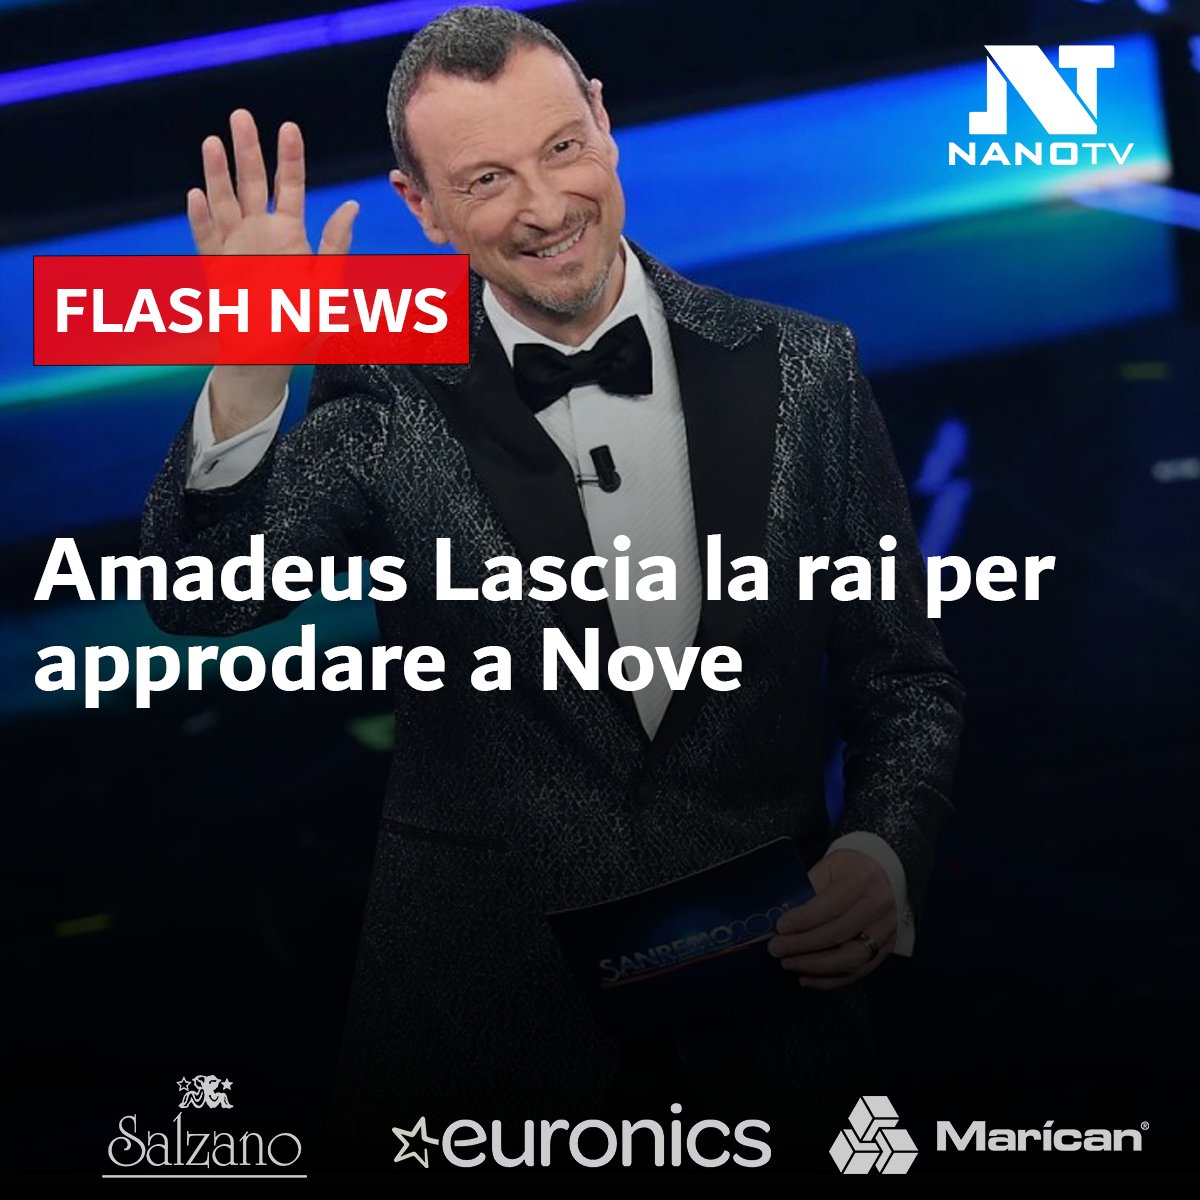 #FlashNews - Oggi è arrivata la conferma ufficiale: dopo vent'anni di successi, #Amadeus lascia la #Rai per approdare a Nove, il canale di Warner Bros. Discovery.
#NanoTV